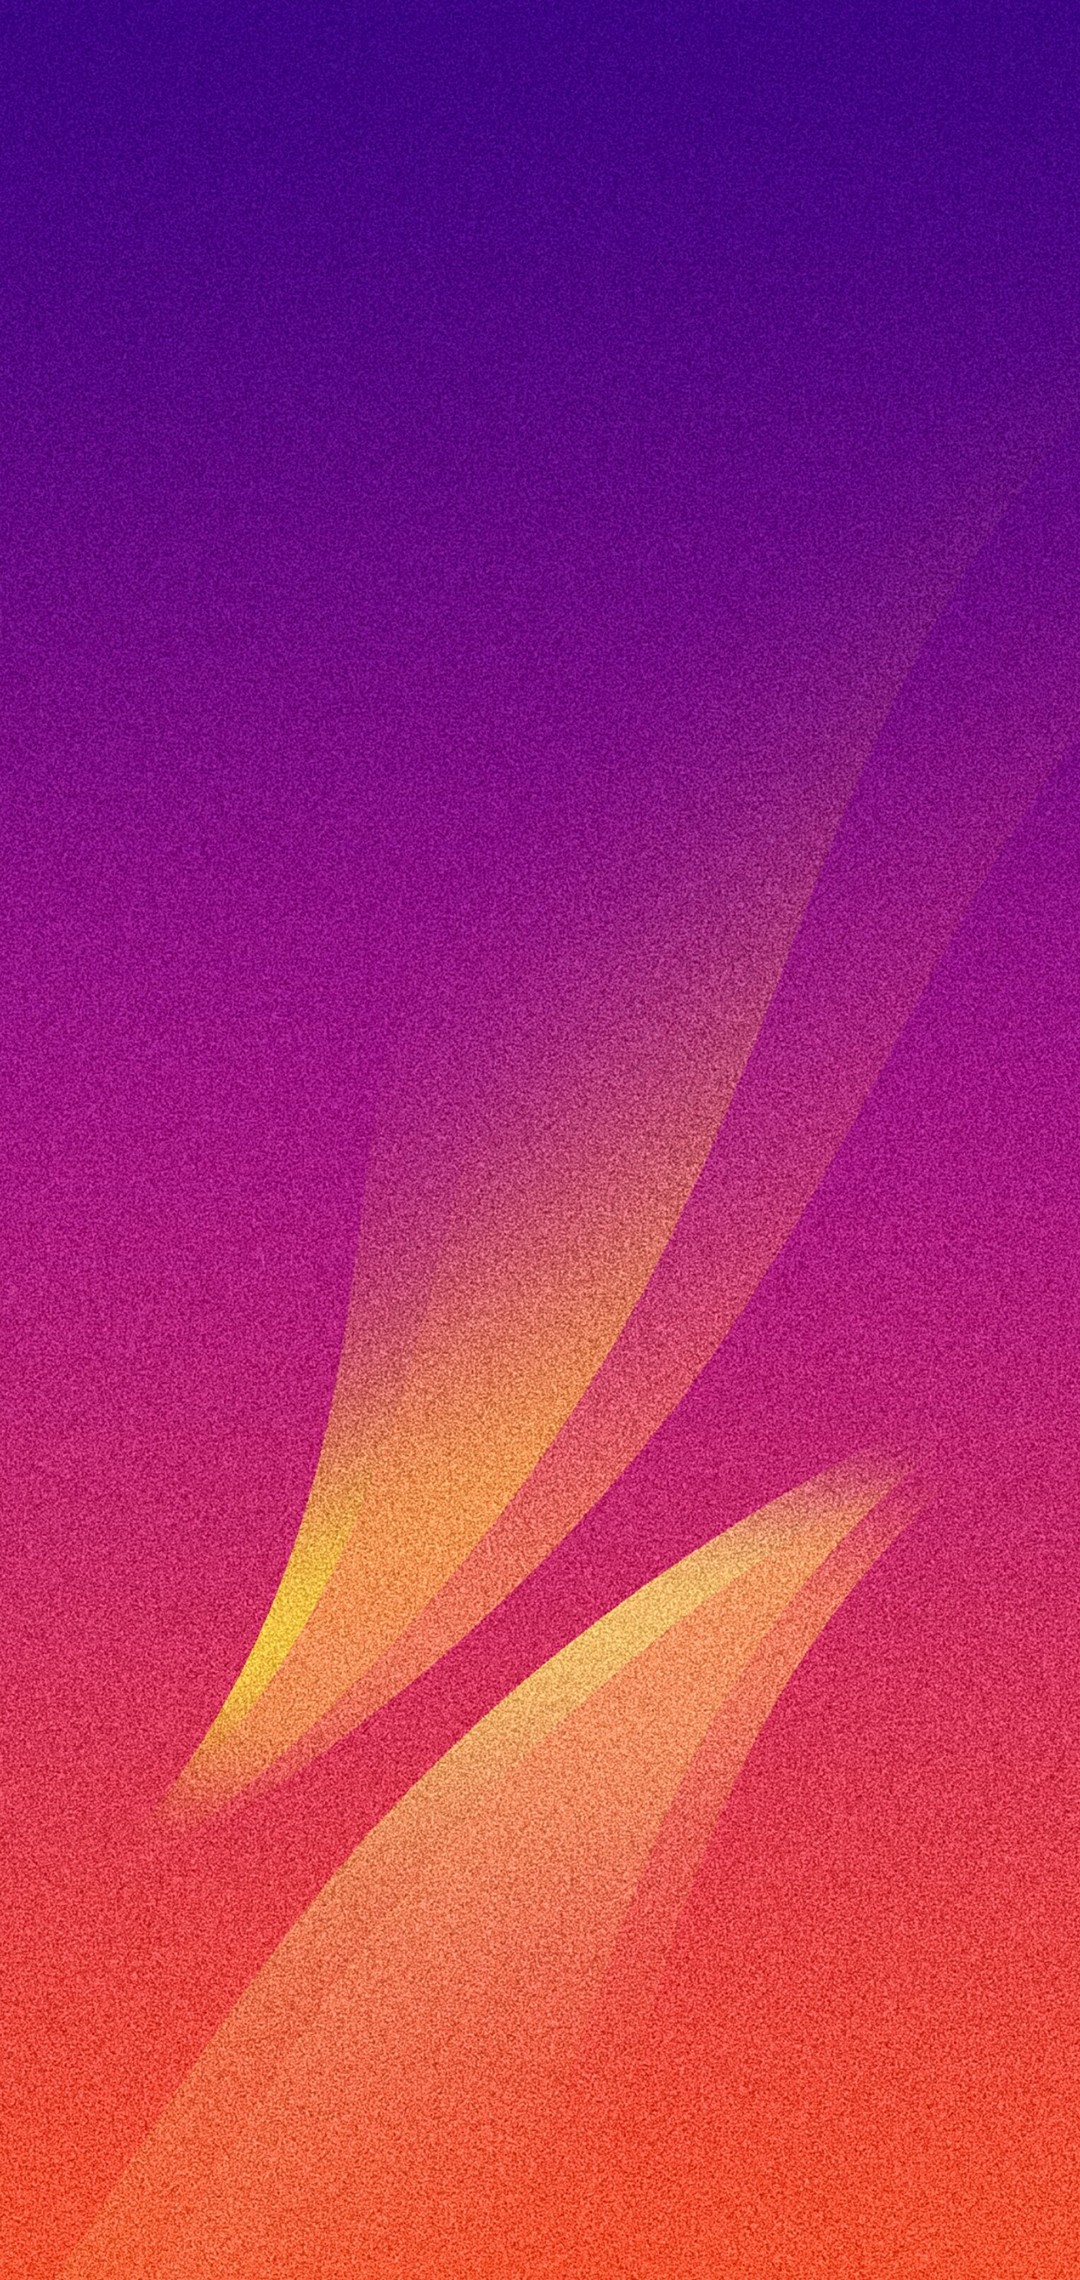 ザラついた紫 黄色のテクスチャー Oppo R15 Pro Androidスマホ壁紙 待ち受け スマラン